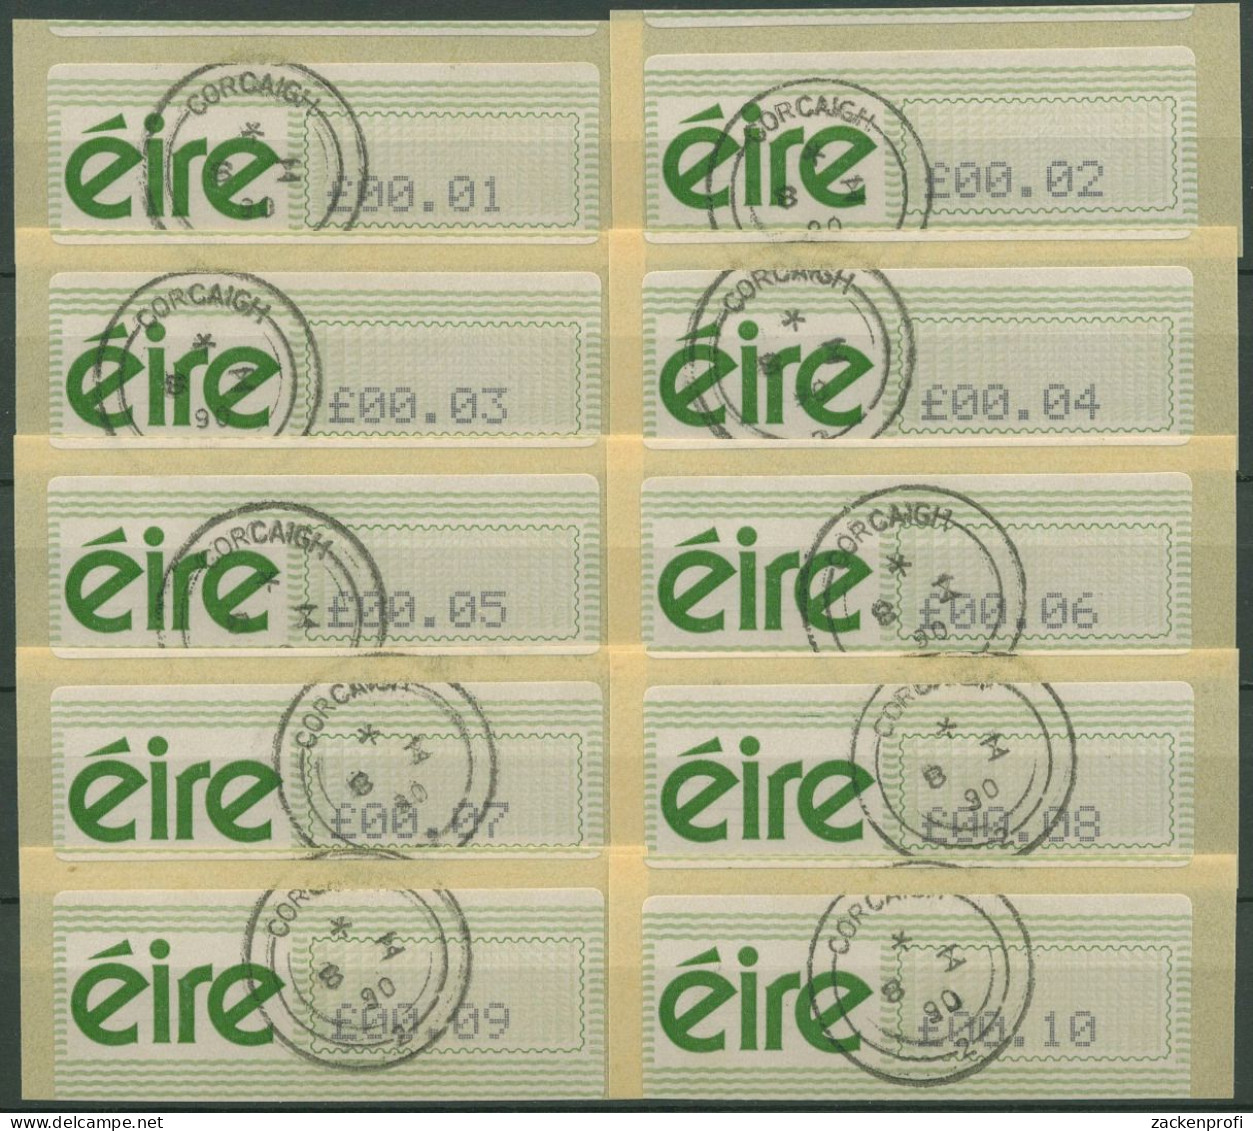 Irland Automatenmarken 1990 Freimarke Satz 10 Werte ATM 3 S Gestempelt - Automatenmarken (Frama)